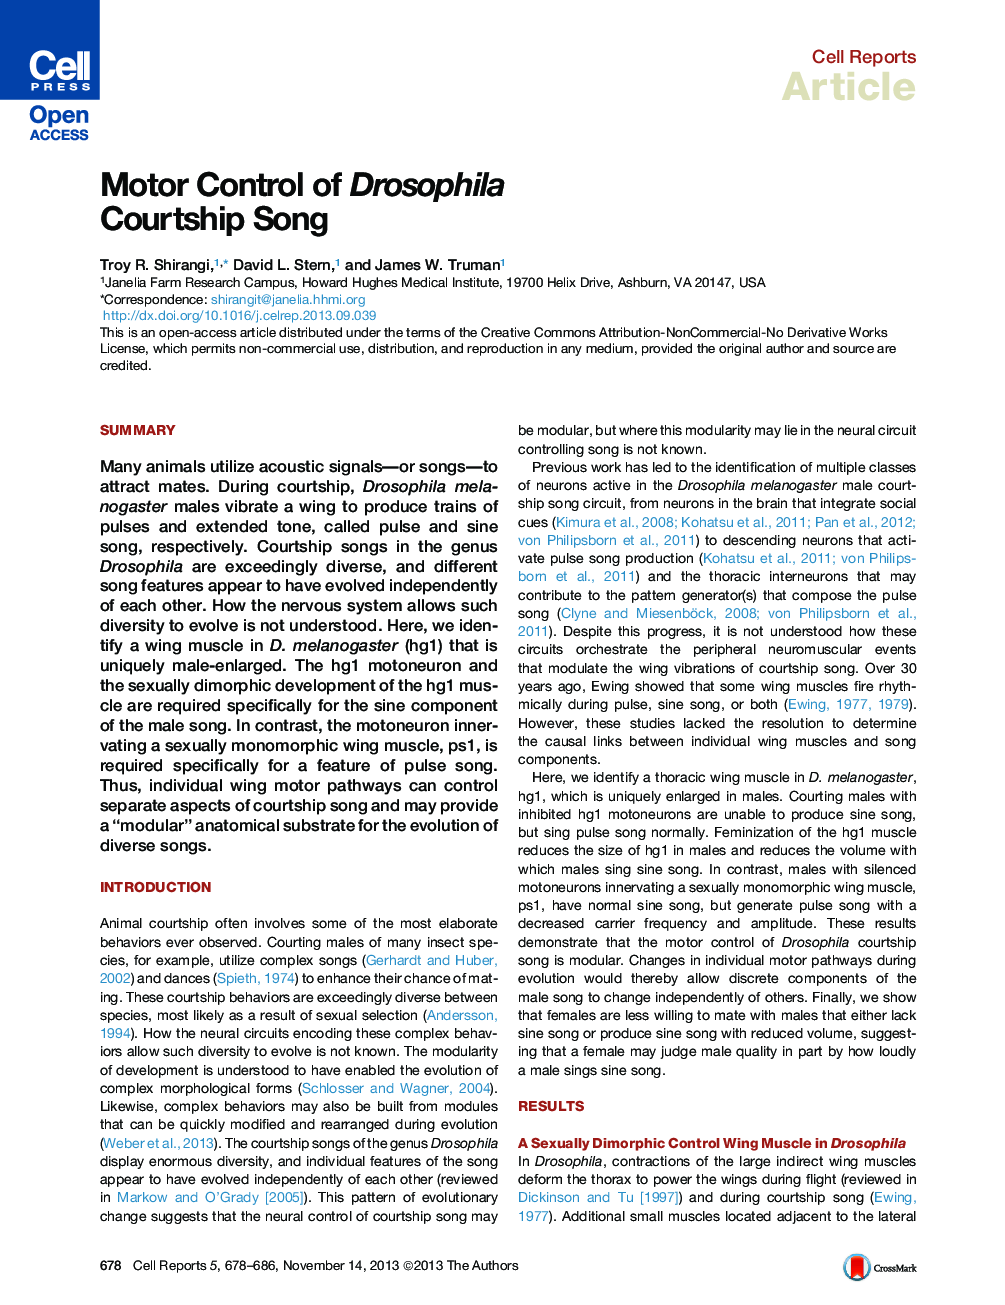 Motor Control of Drosophila Courtship Song 